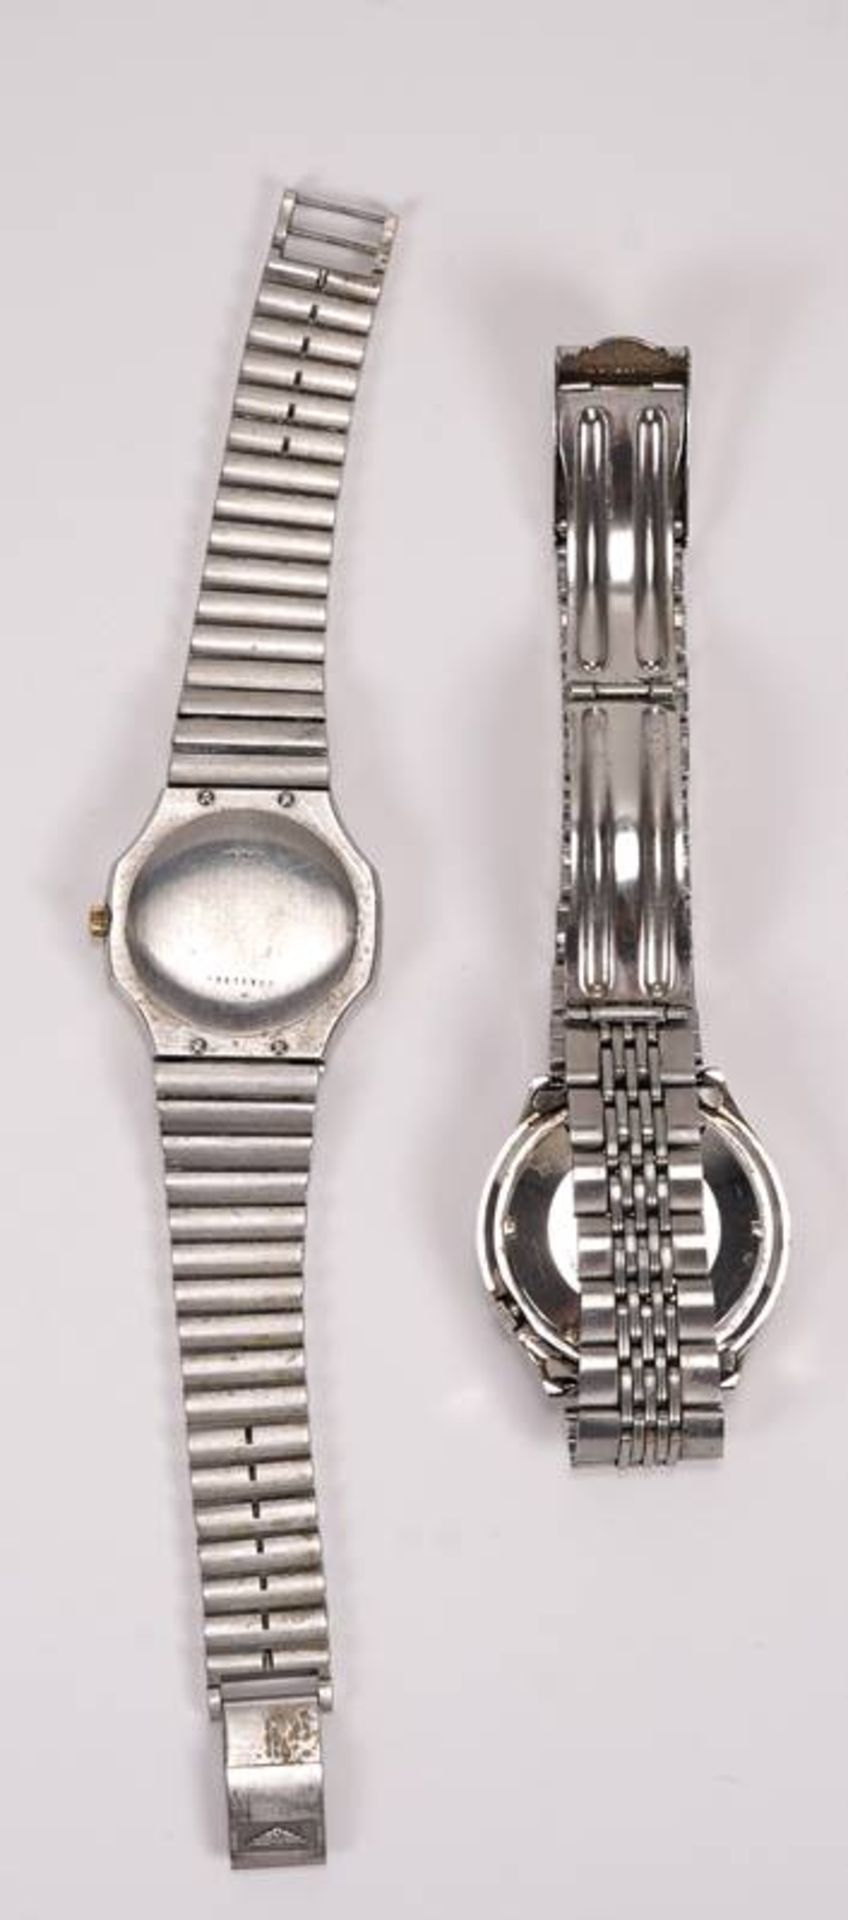 Seiko Automatic Armbanduhr - Bild 2 aus 2